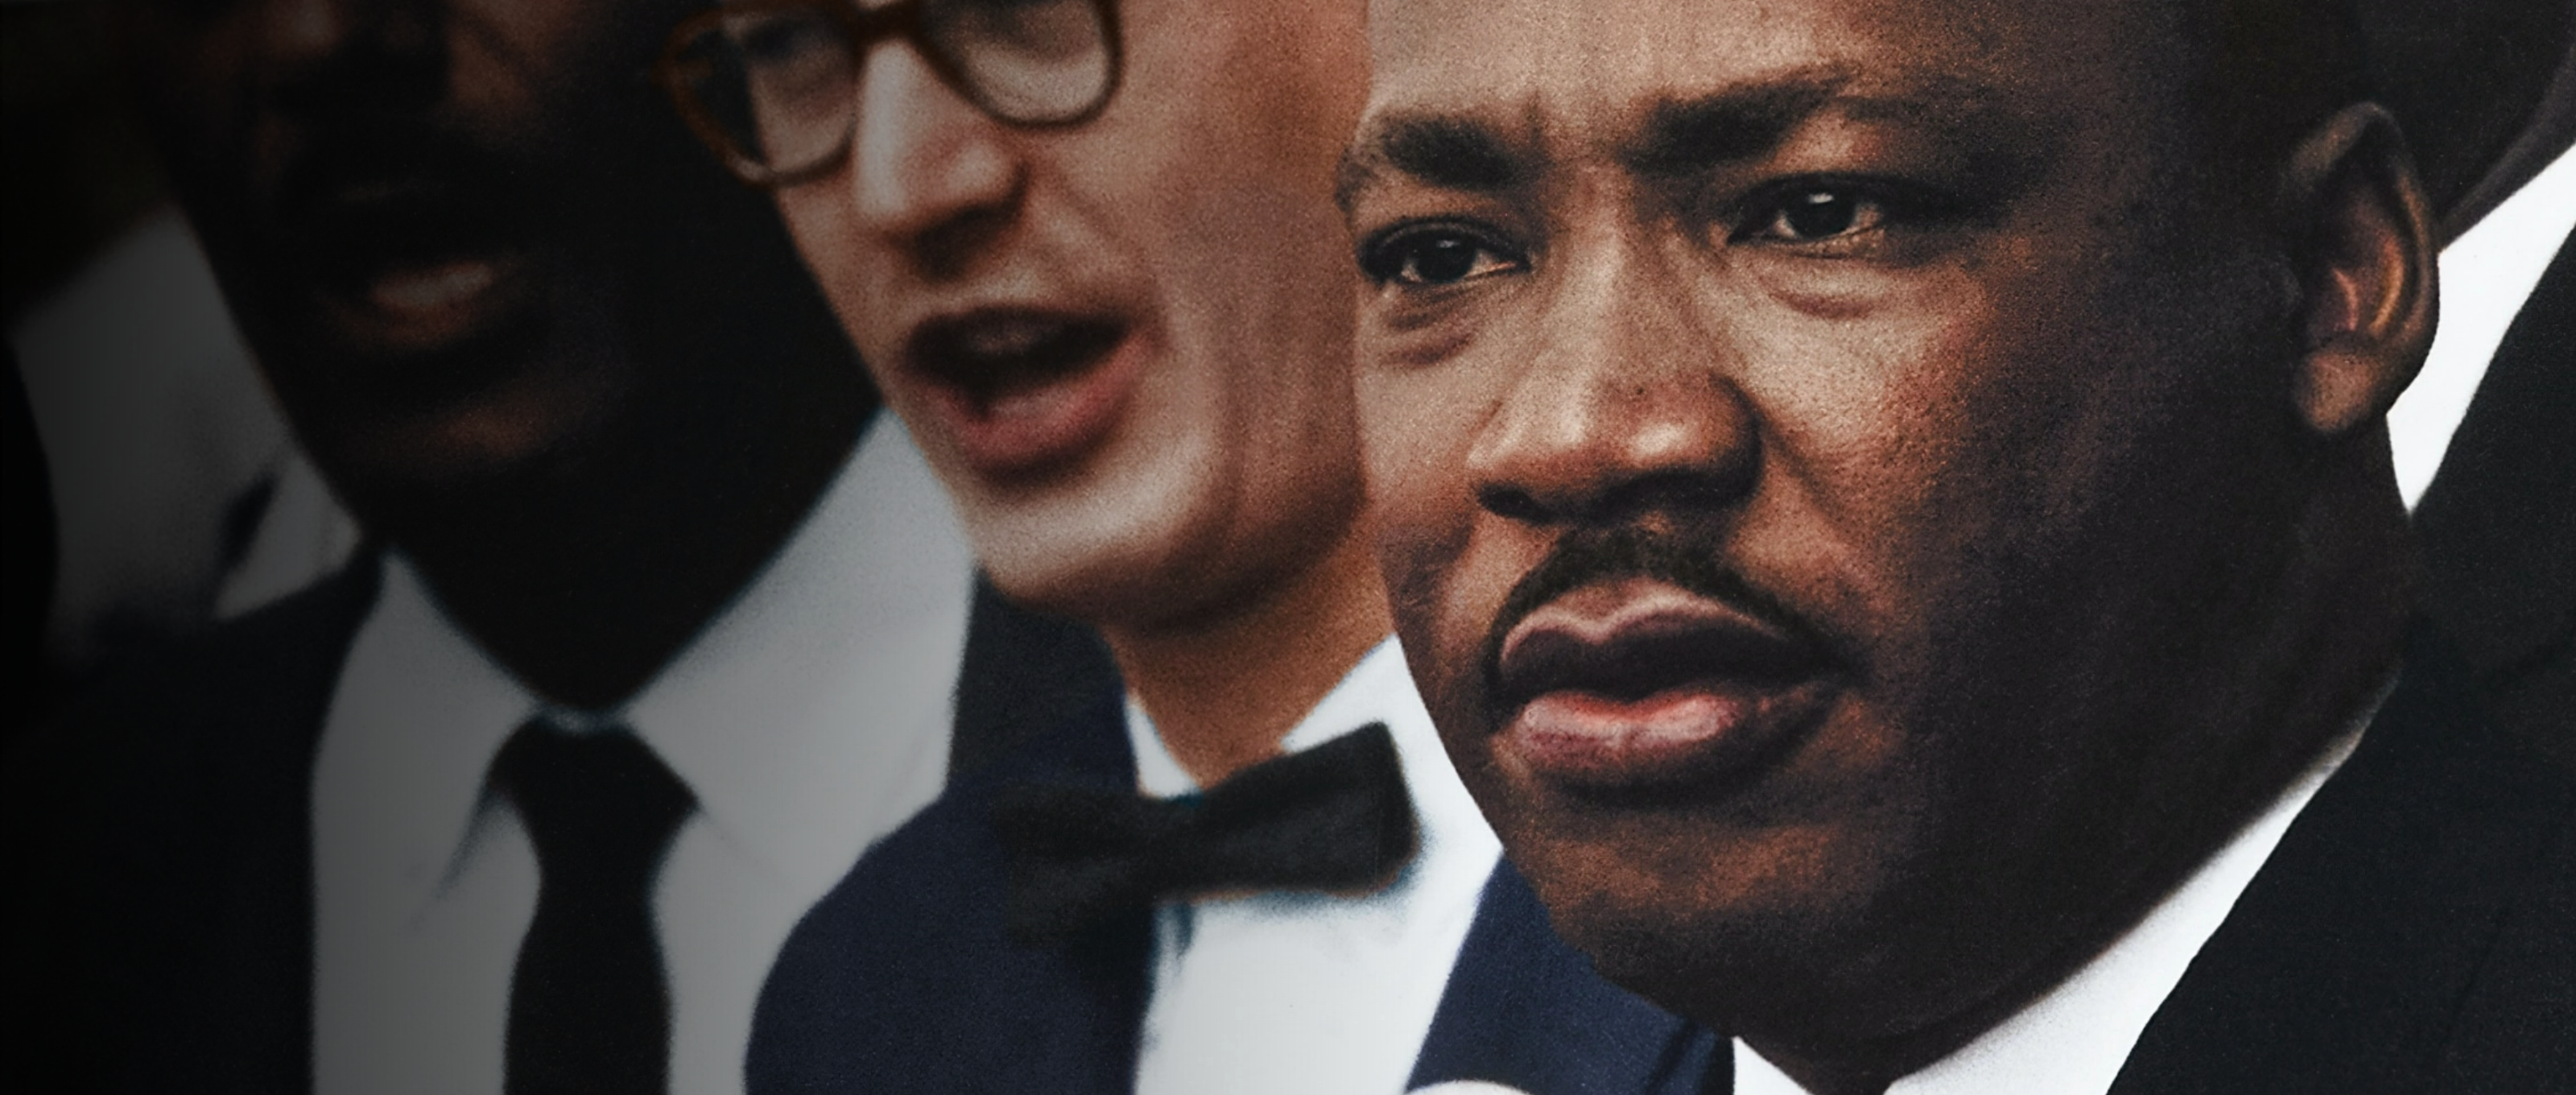 Dr. Martin Luther King Jr background image